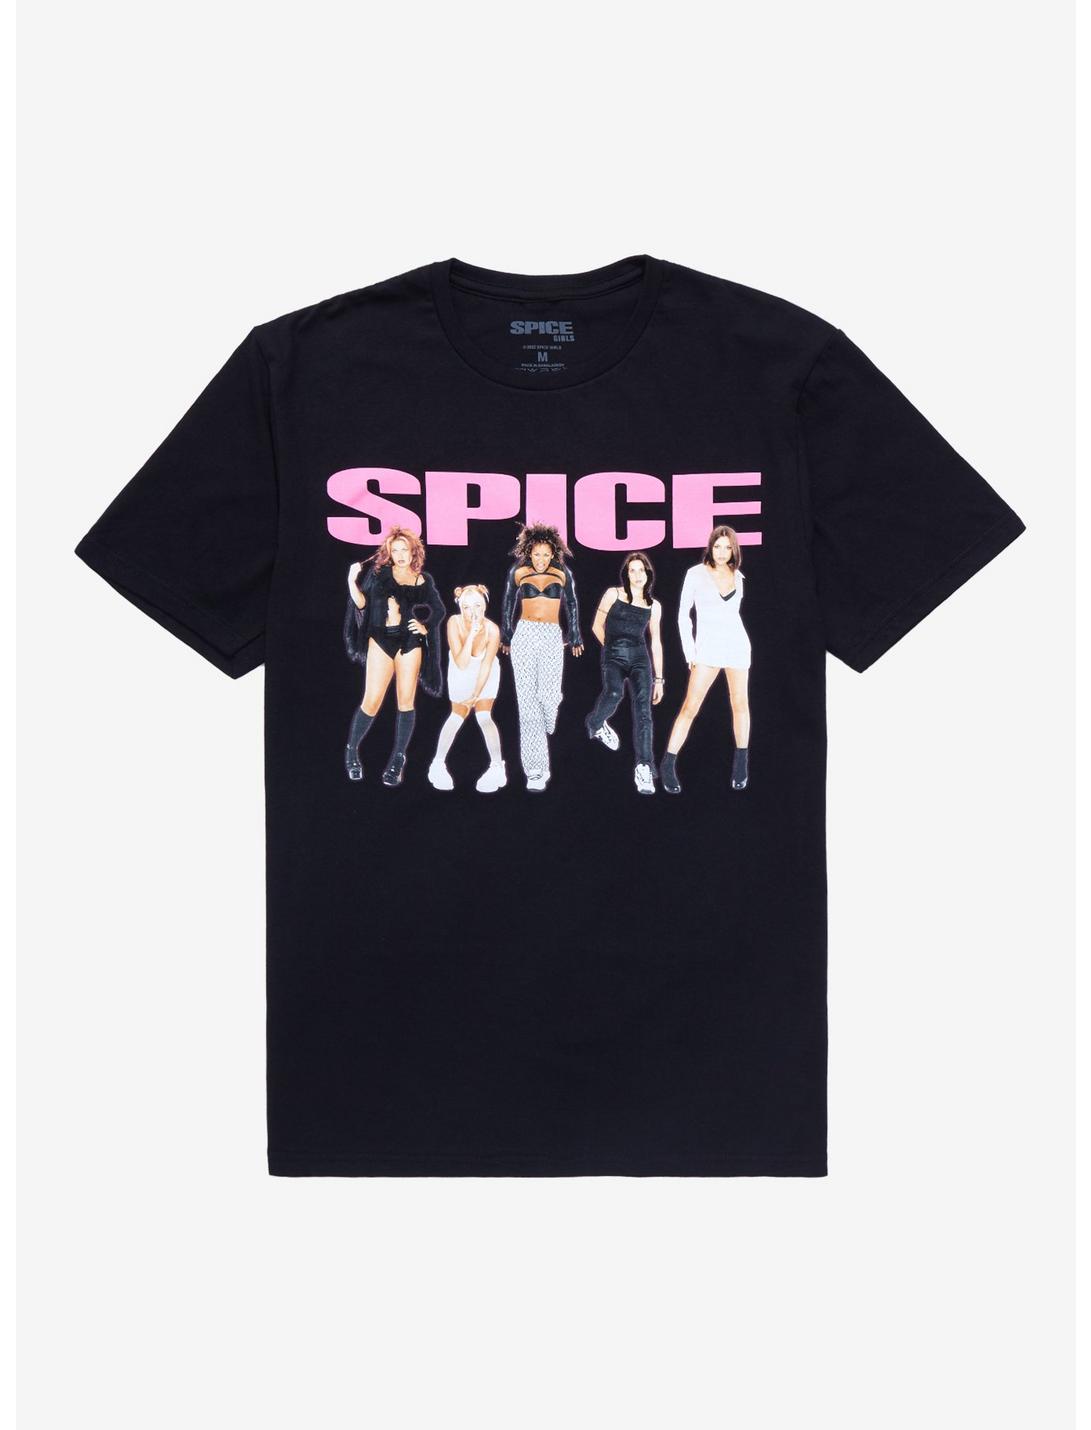 Spice Girls Members T-Shirt, BLACK, hi-res